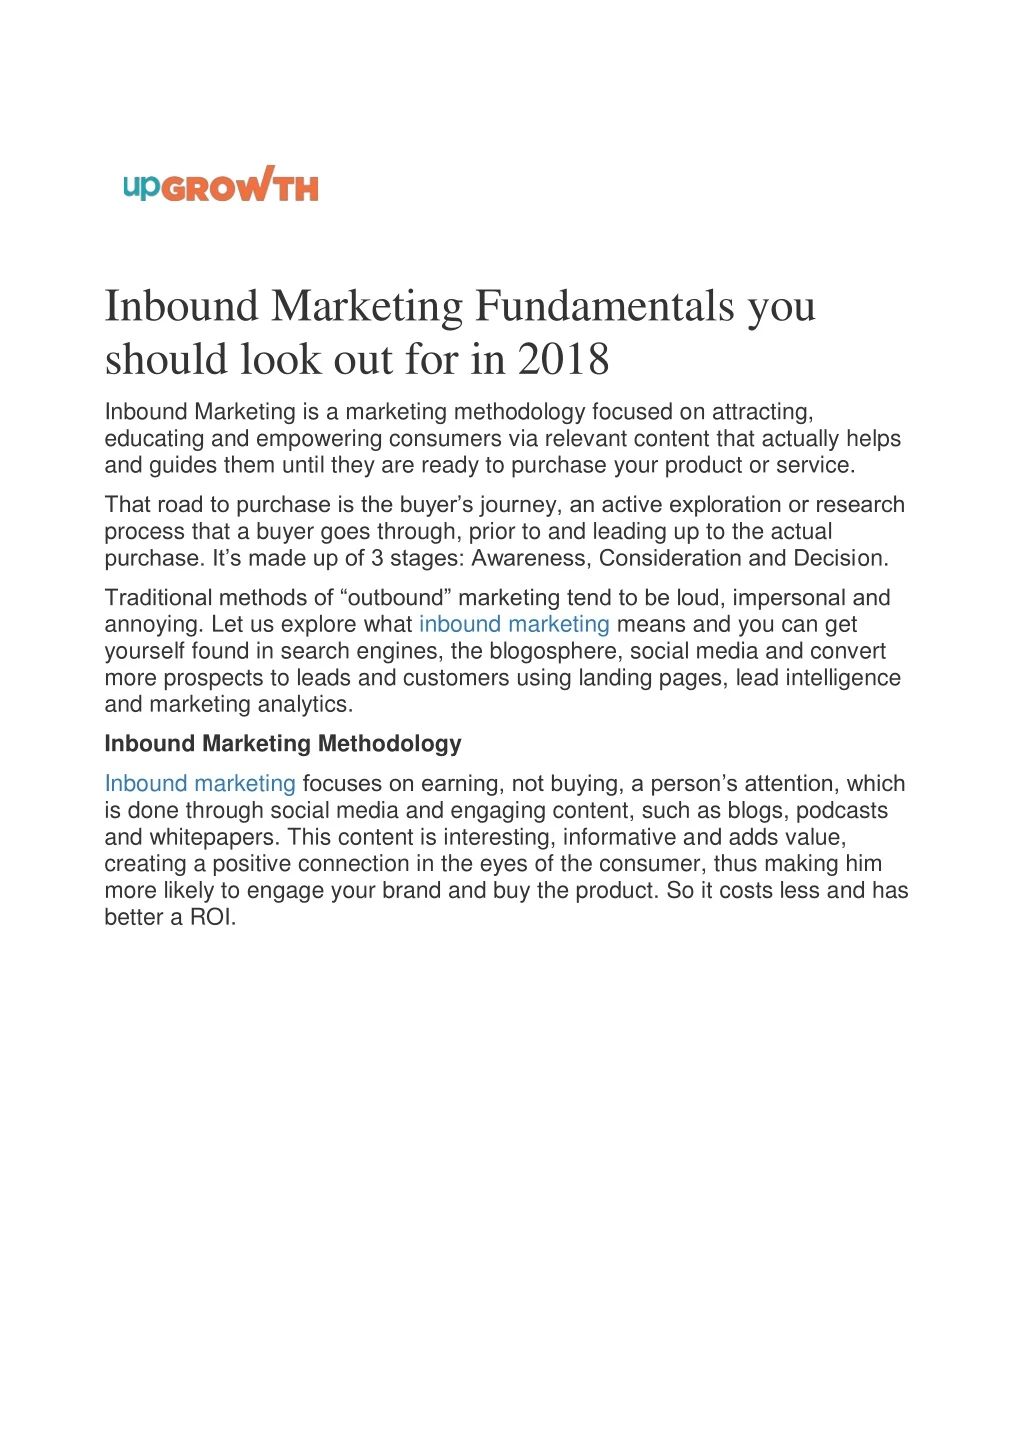 inbound marketing fundamentals you should look